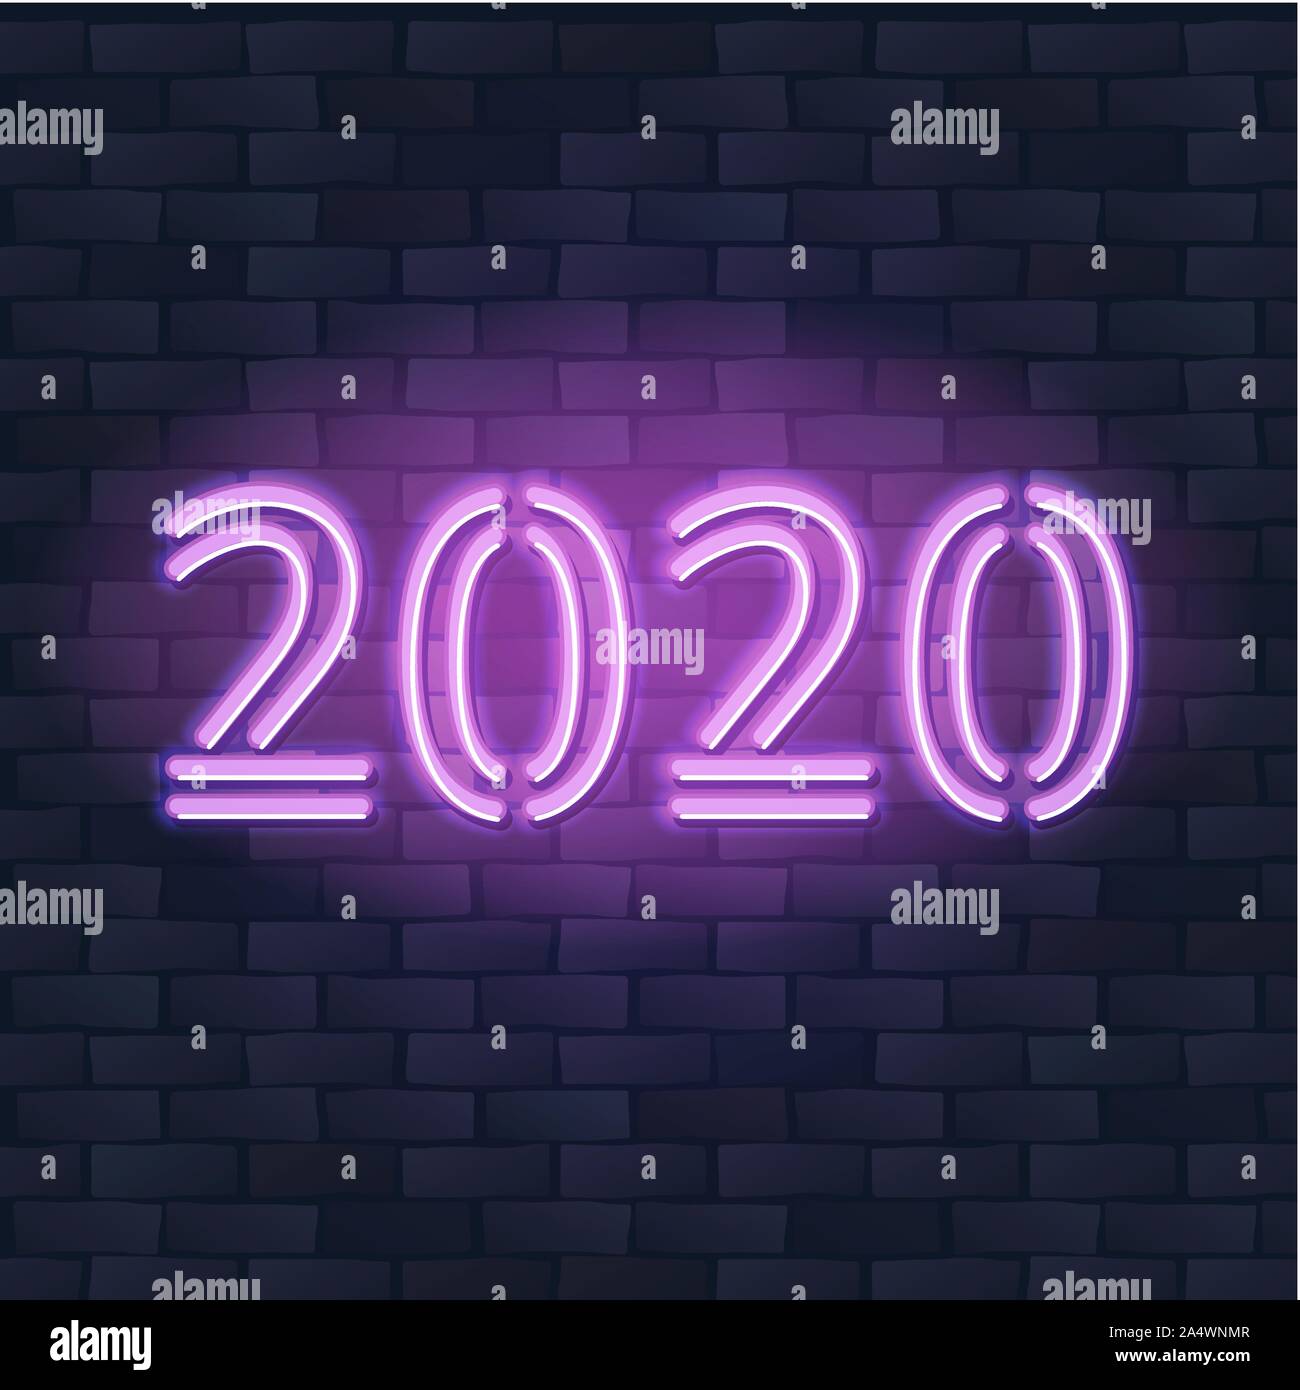 2020 Año Nuevo Concepto con coloridas luces de neón. Elementos de diseño retro para presentaciones, folletos, volantes, carteles o postales. Ilustración vectorial. Ilustración del Vector